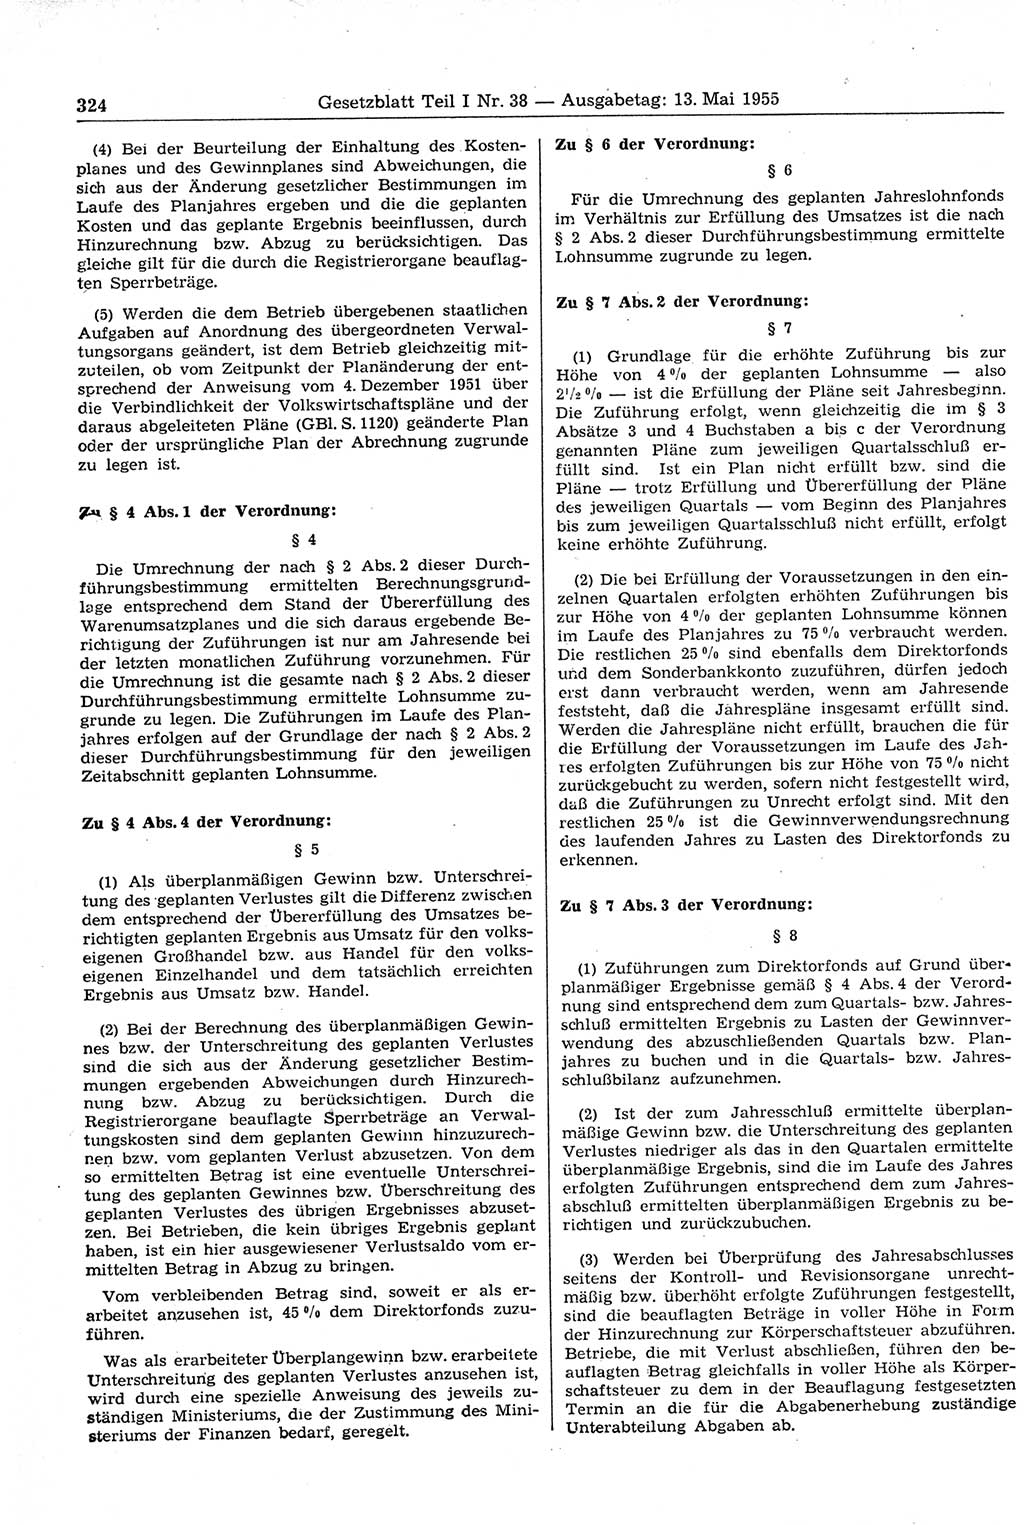 Gesetzblatt (GBl.) der Deutschen Demokratischen Republik (DDR) Teil Ⅰ 1955, Seite 324 (GBl. DDR Ⅰ 1955, S. 324)